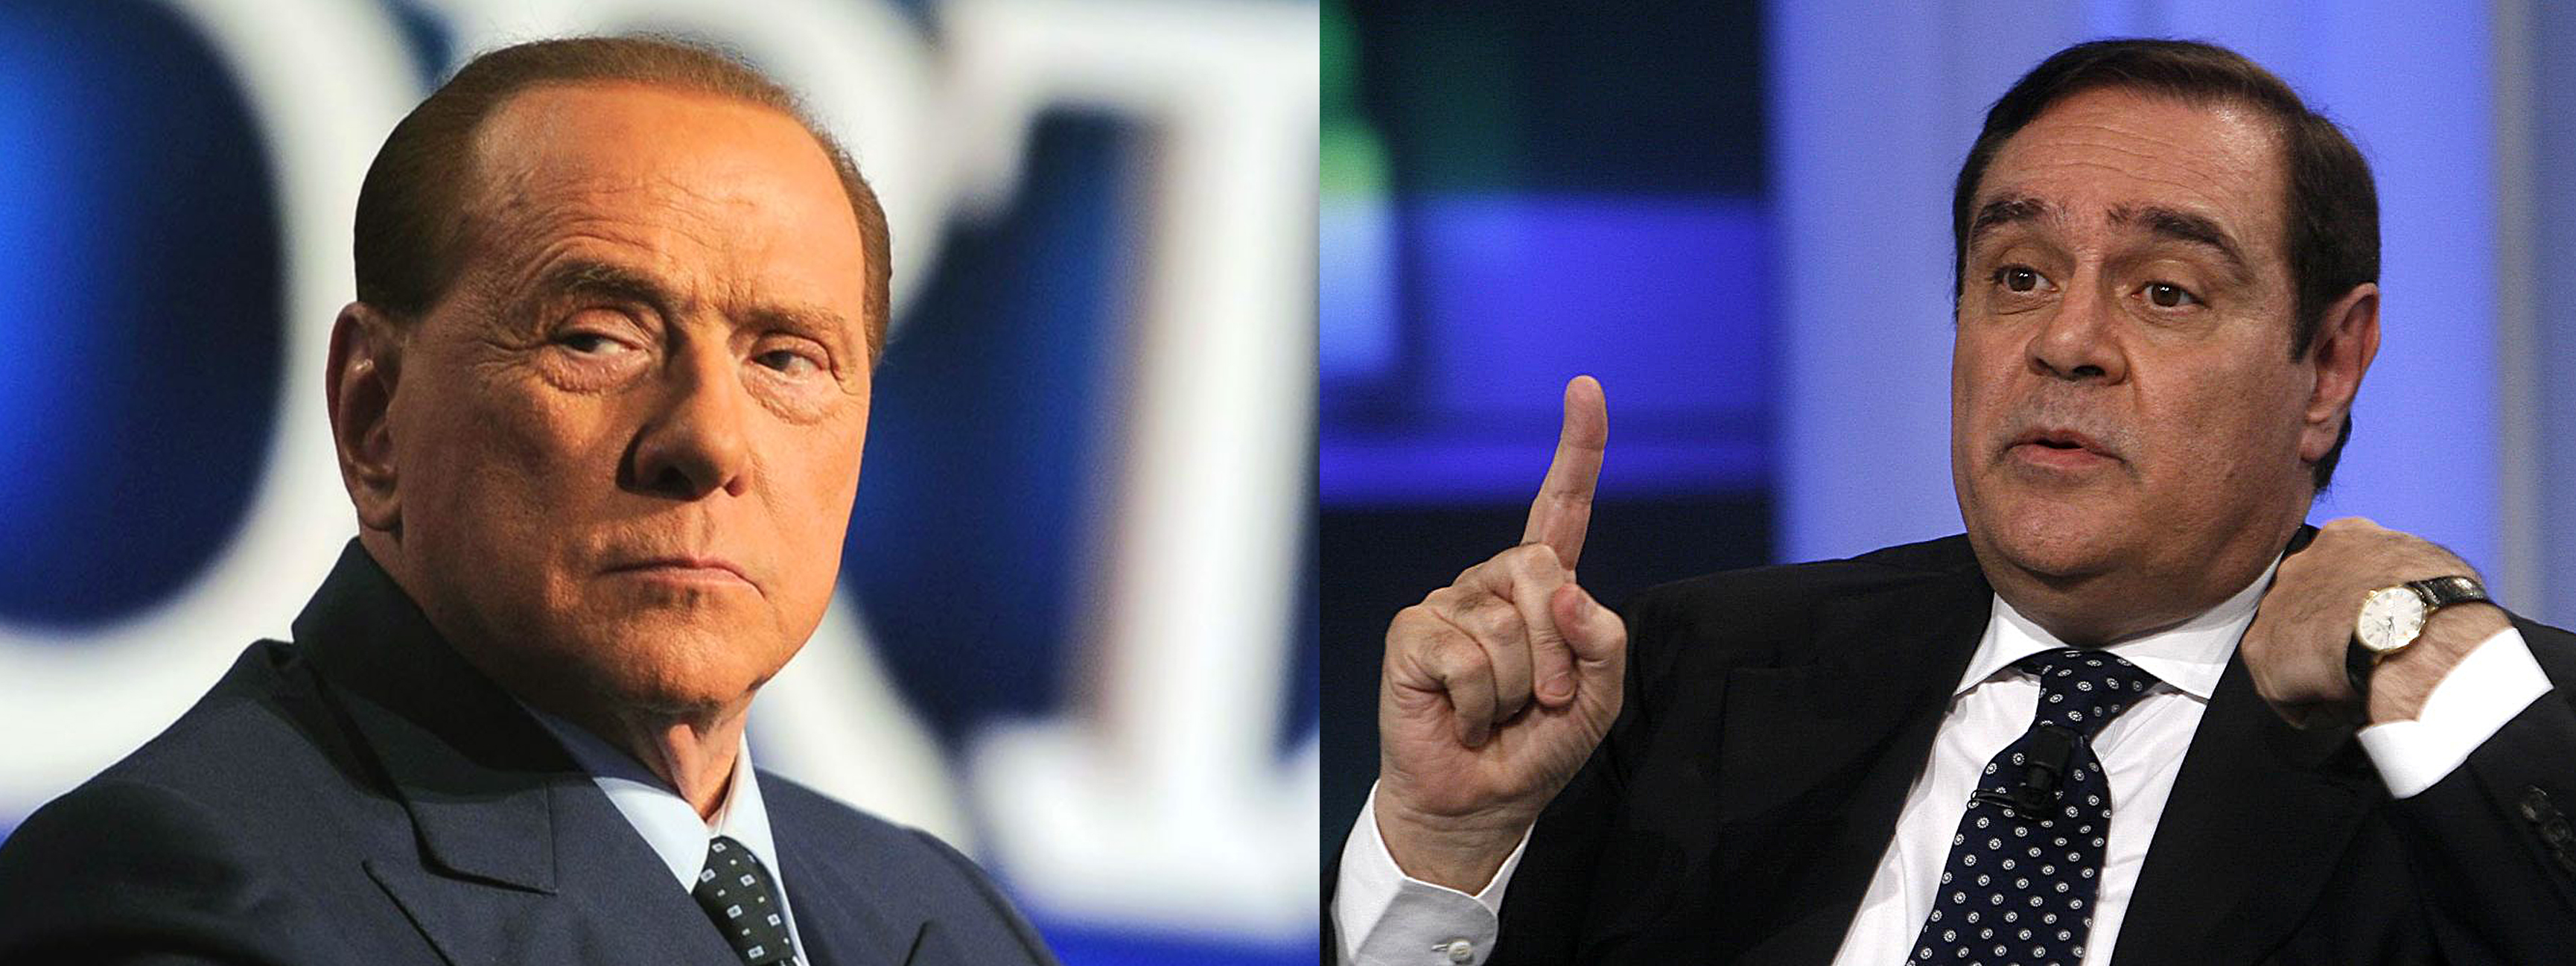 Mastella a Berlusconi: “Attento Silvio, Salvini vuole fotterti”